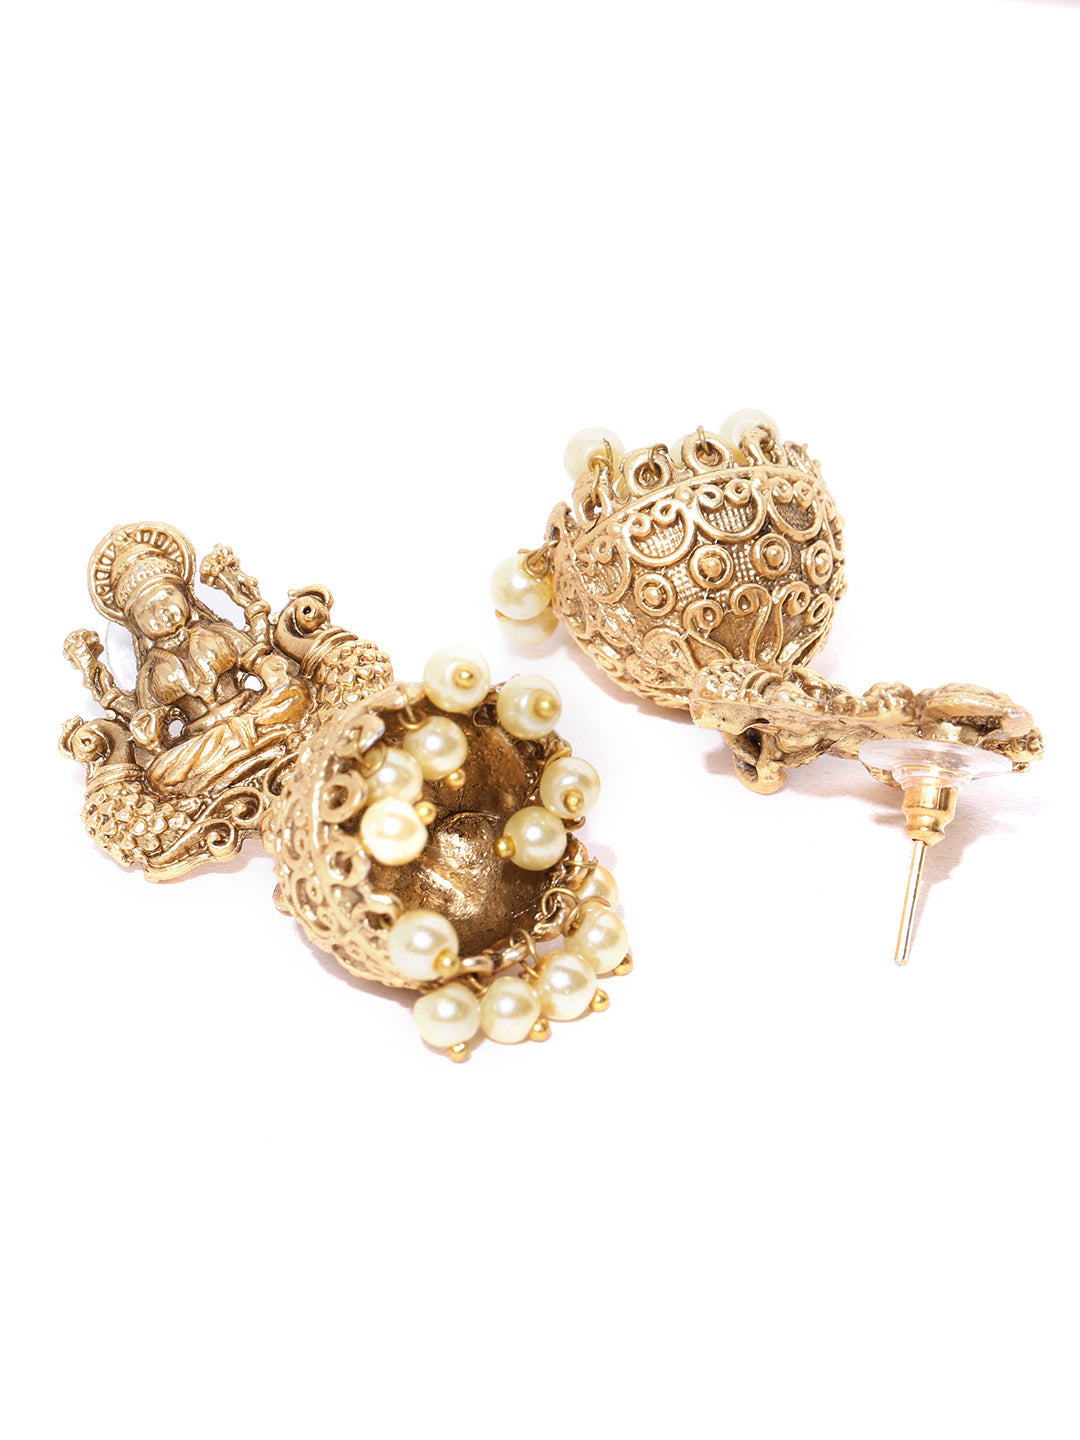 Matte Gold Finish Goddess Laxmi Inspired Designer Jhumki Earrings - NOZ2TOZ